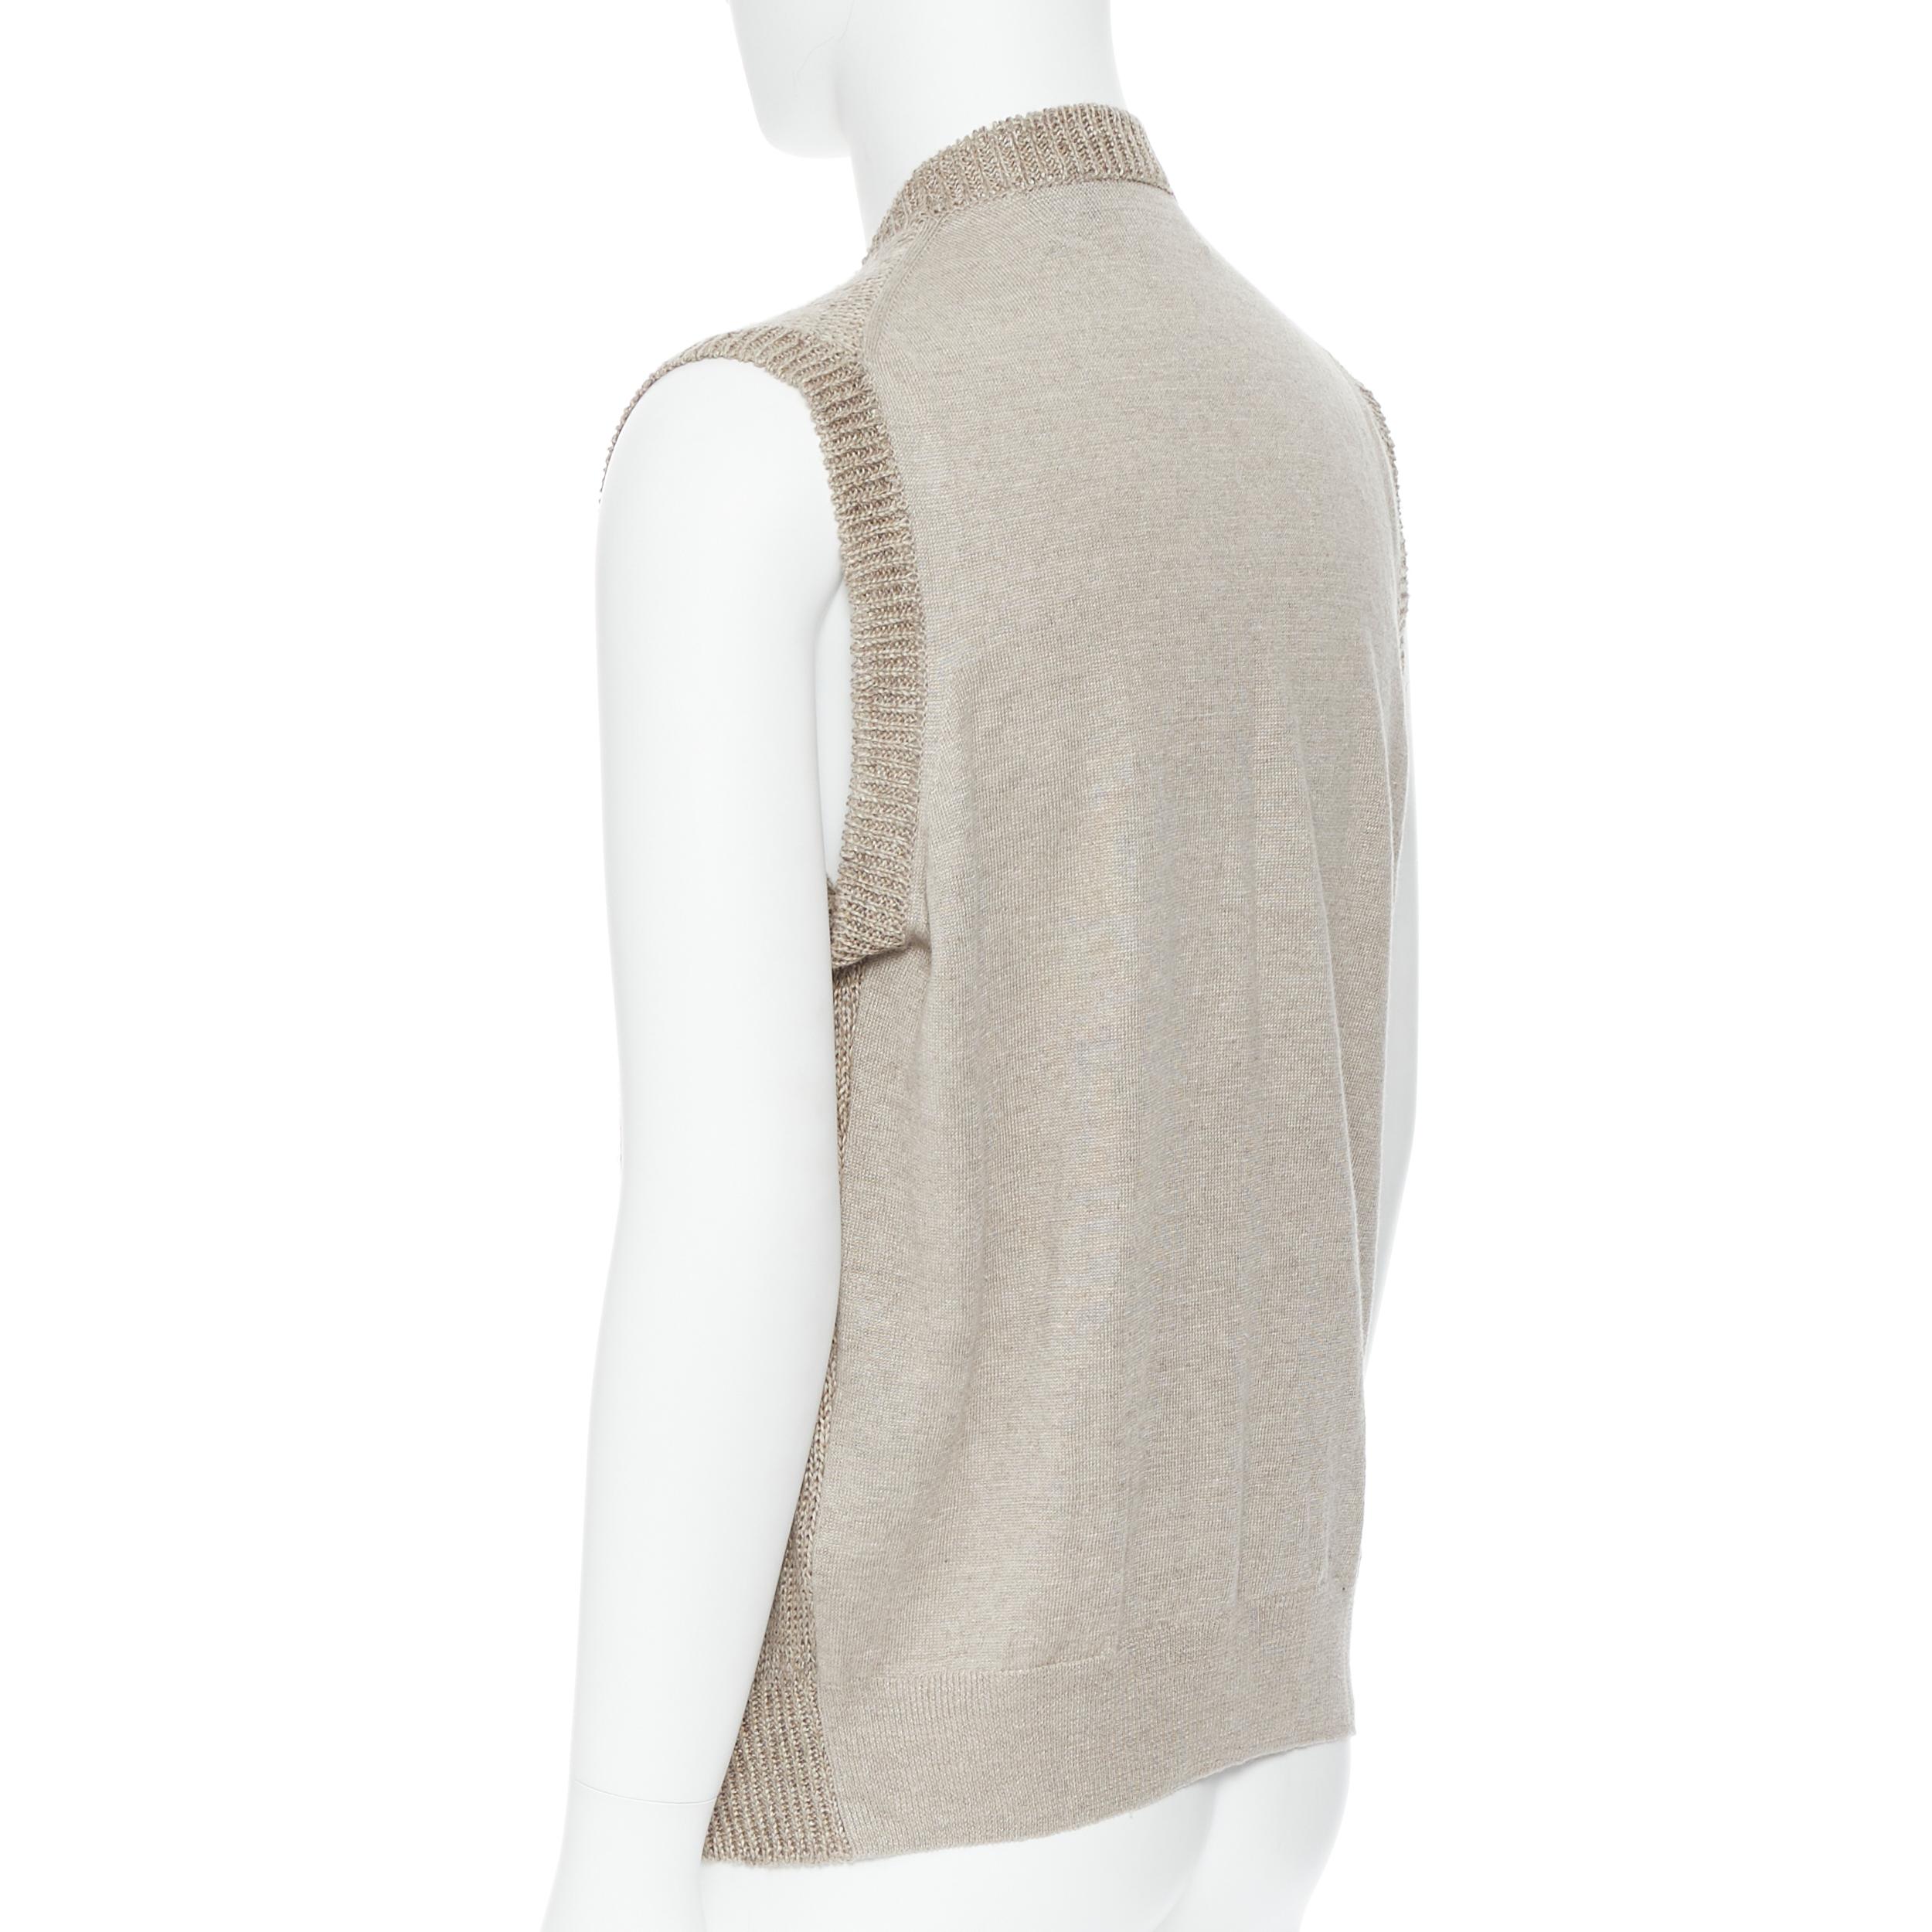 Men's COMME DES GARCONS 2009 100% linen beige knit cardigan vest sweater M